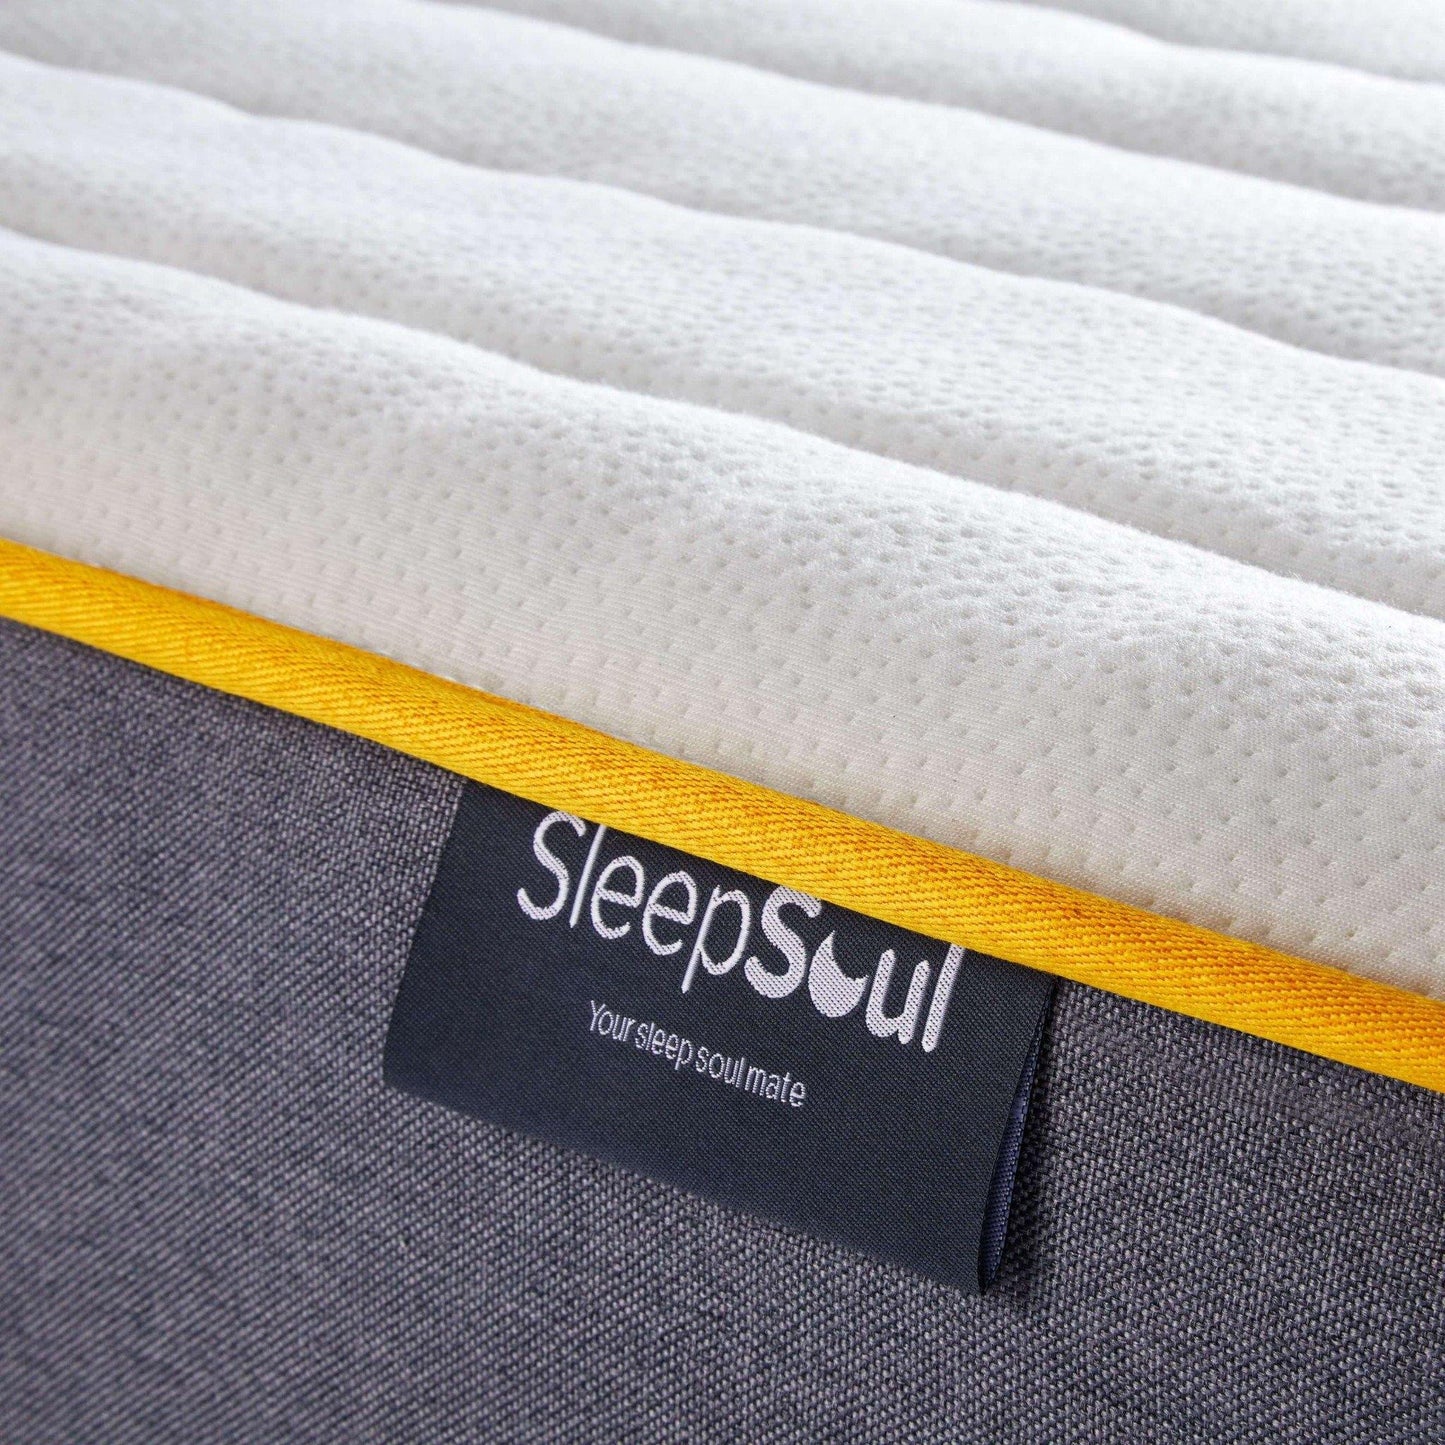 SleepSoul comfort 800 pocket spring label